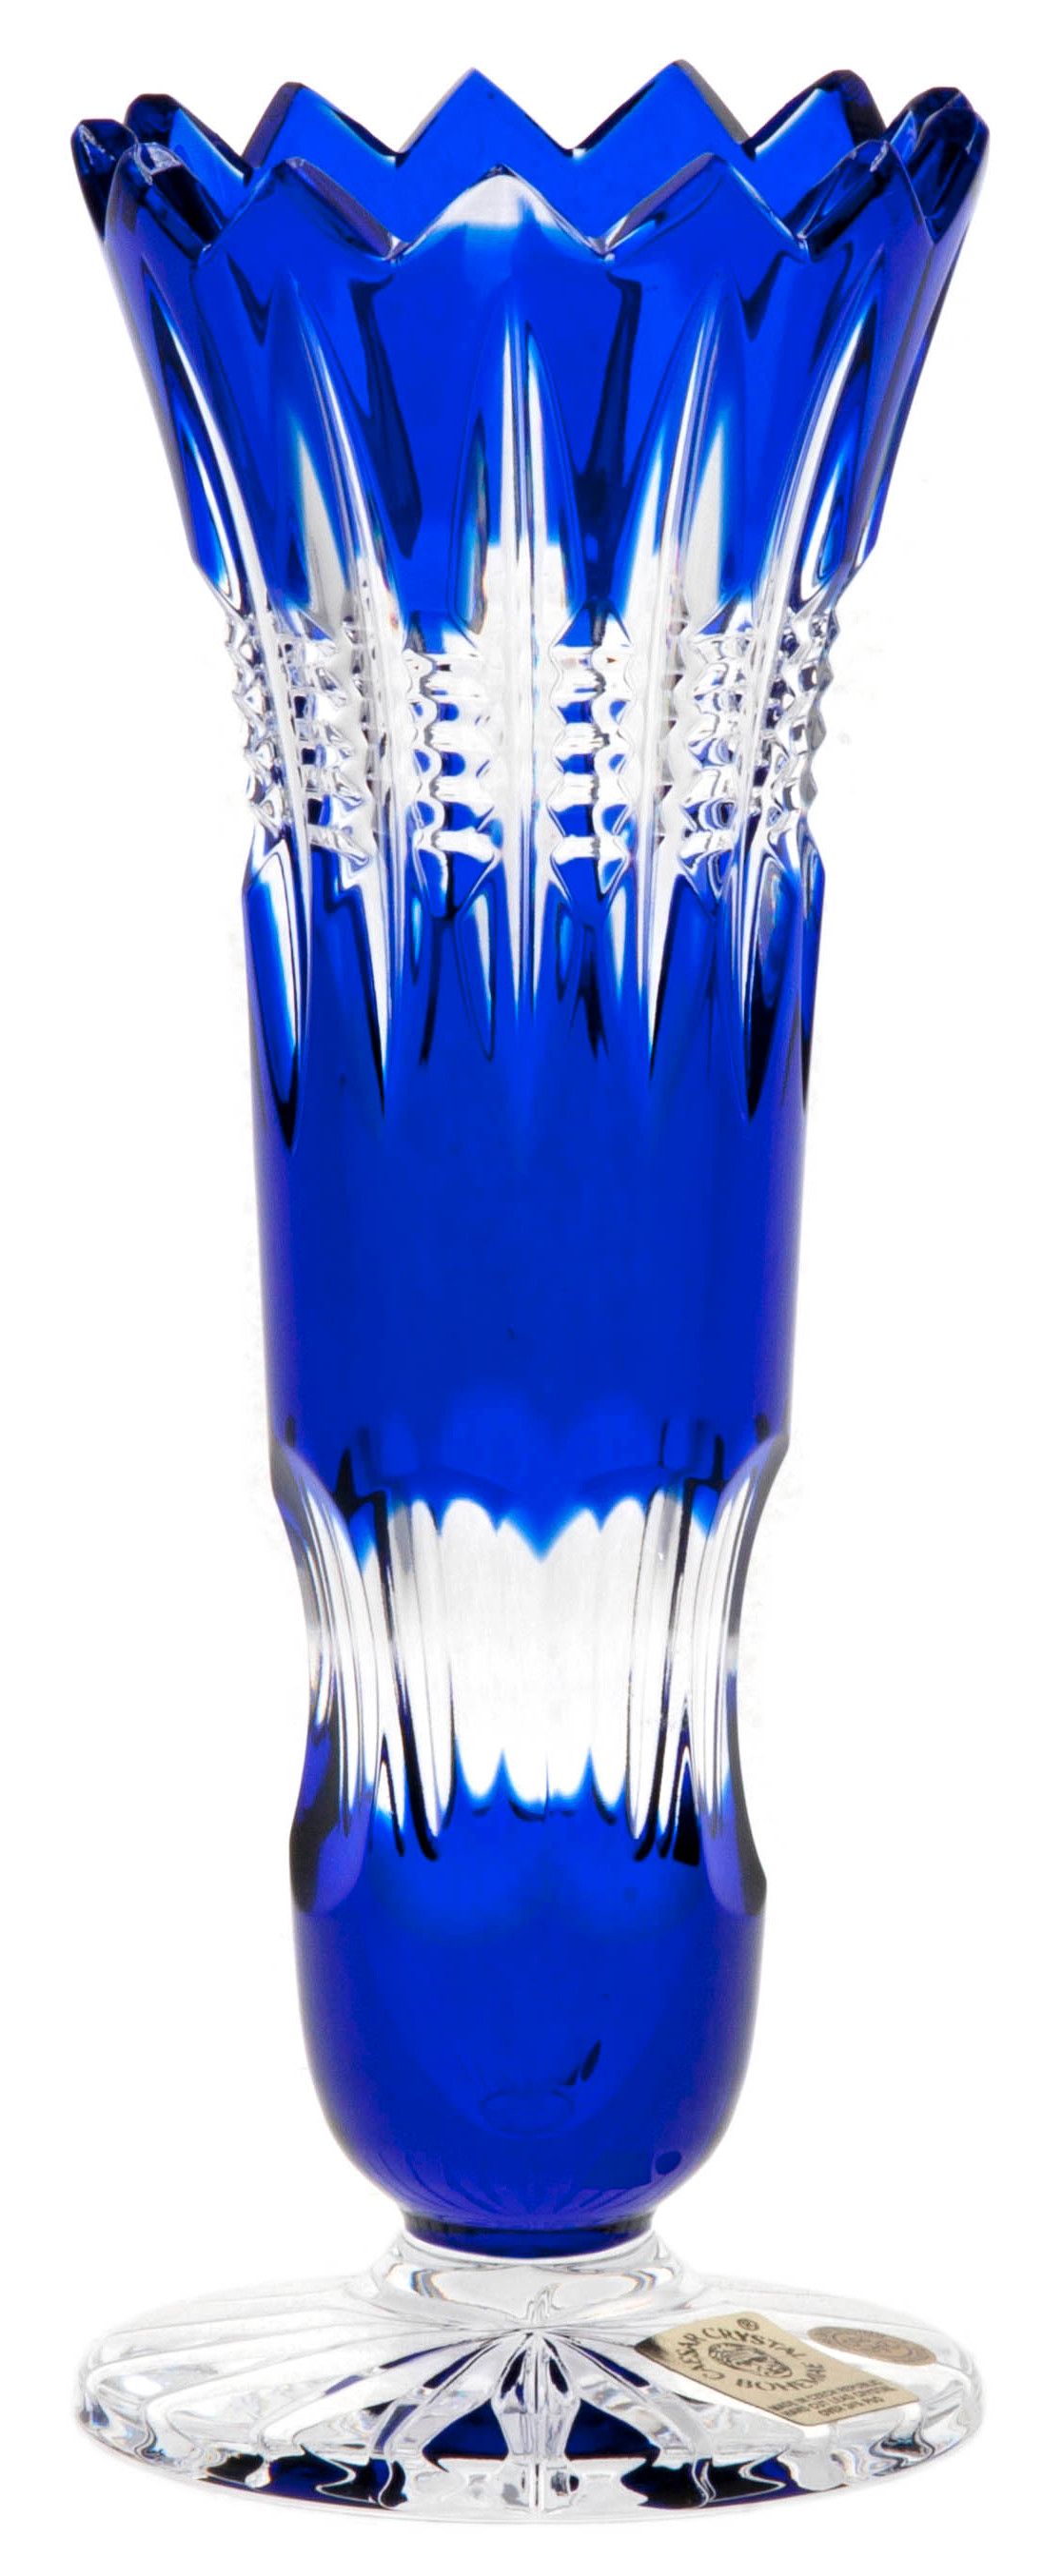 Krištáľová váza Brilant, farba modrá, výška 175 mm